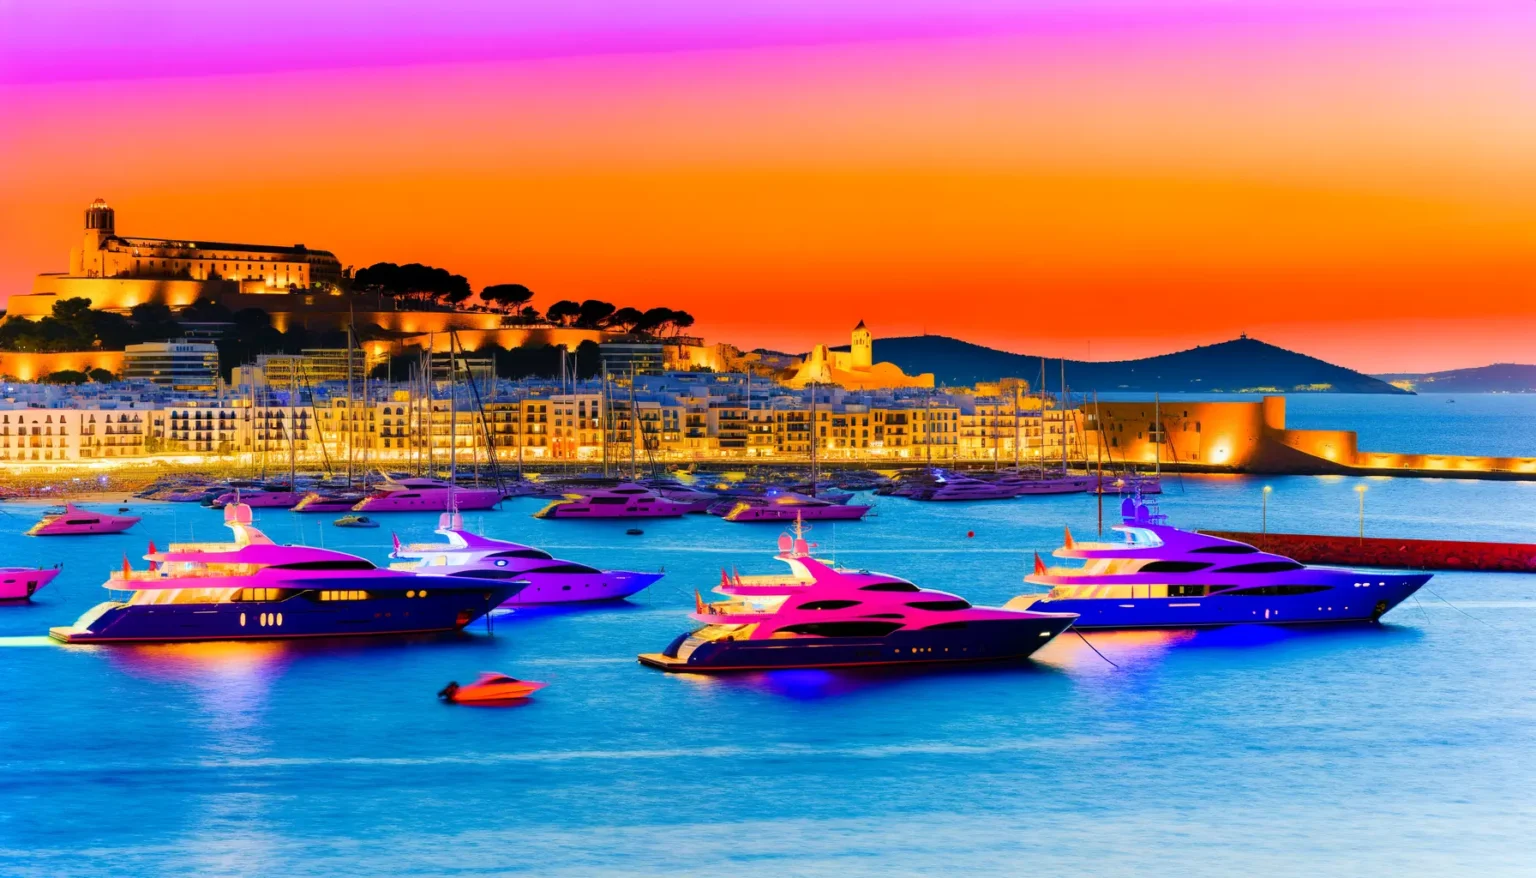 Lebhaft beleuchteter Hafen bei Sonnenuntergang mit mehreren Yachten auf dem Wasser und einer historischen Stadt im Hintergrund unter einem intensiv farbigen Himmel in Pink und Orange.